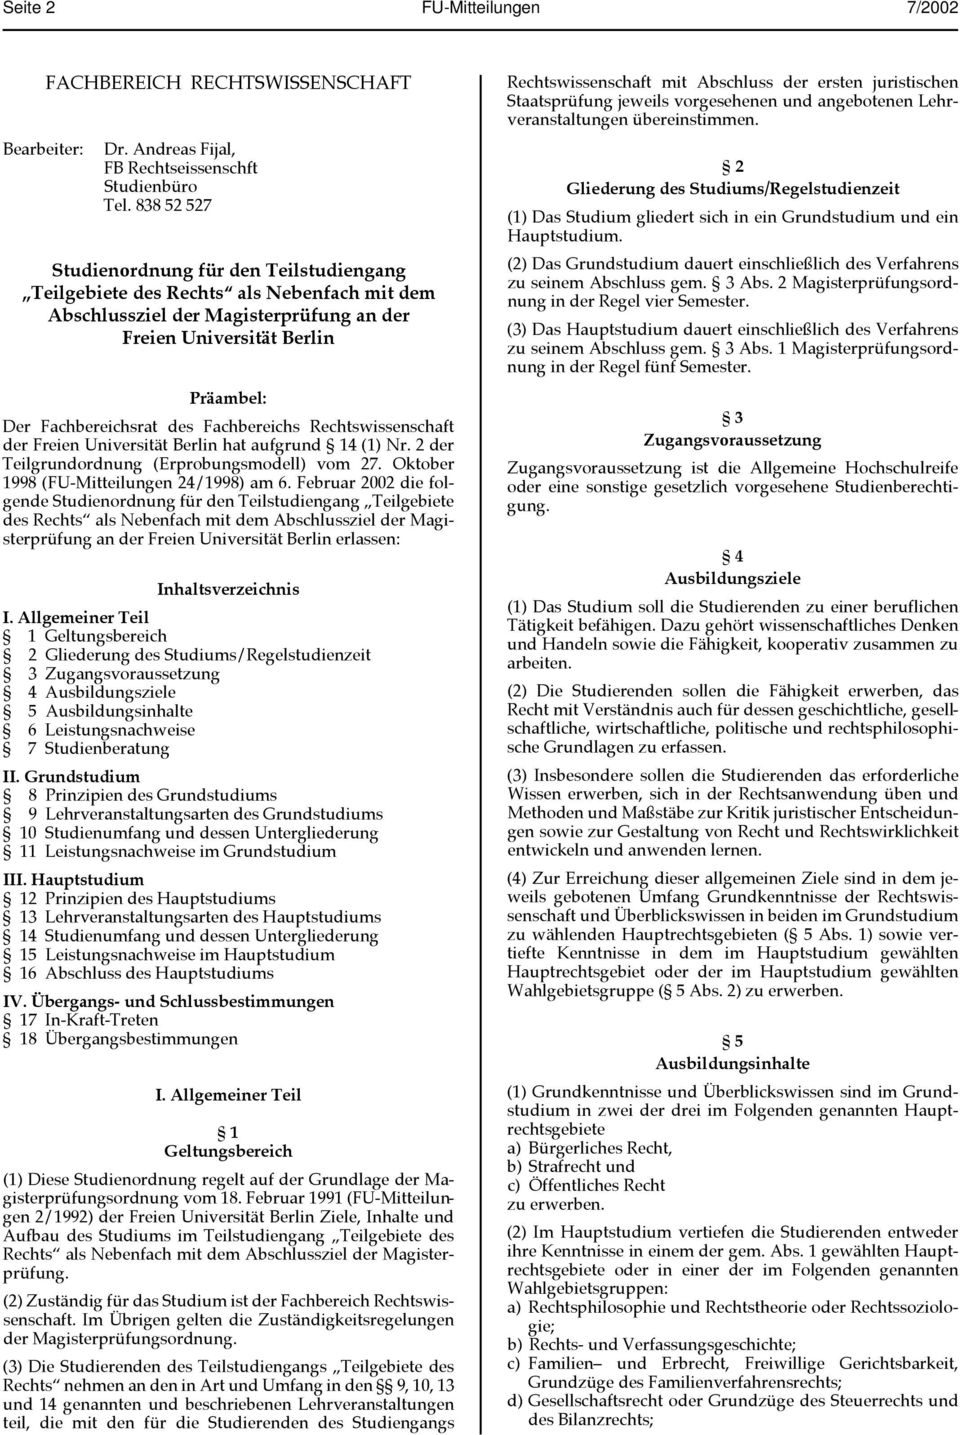 Fachbereichs Rechtswissenschaft der Freien Universität Berlin hat aufgrund 14 (1) Nr. 2 der Teilgrundordnung (Erprobungsmodell) vom 27. Oktober 1998 (FU-Mitteilungen 24/1998) am 6.